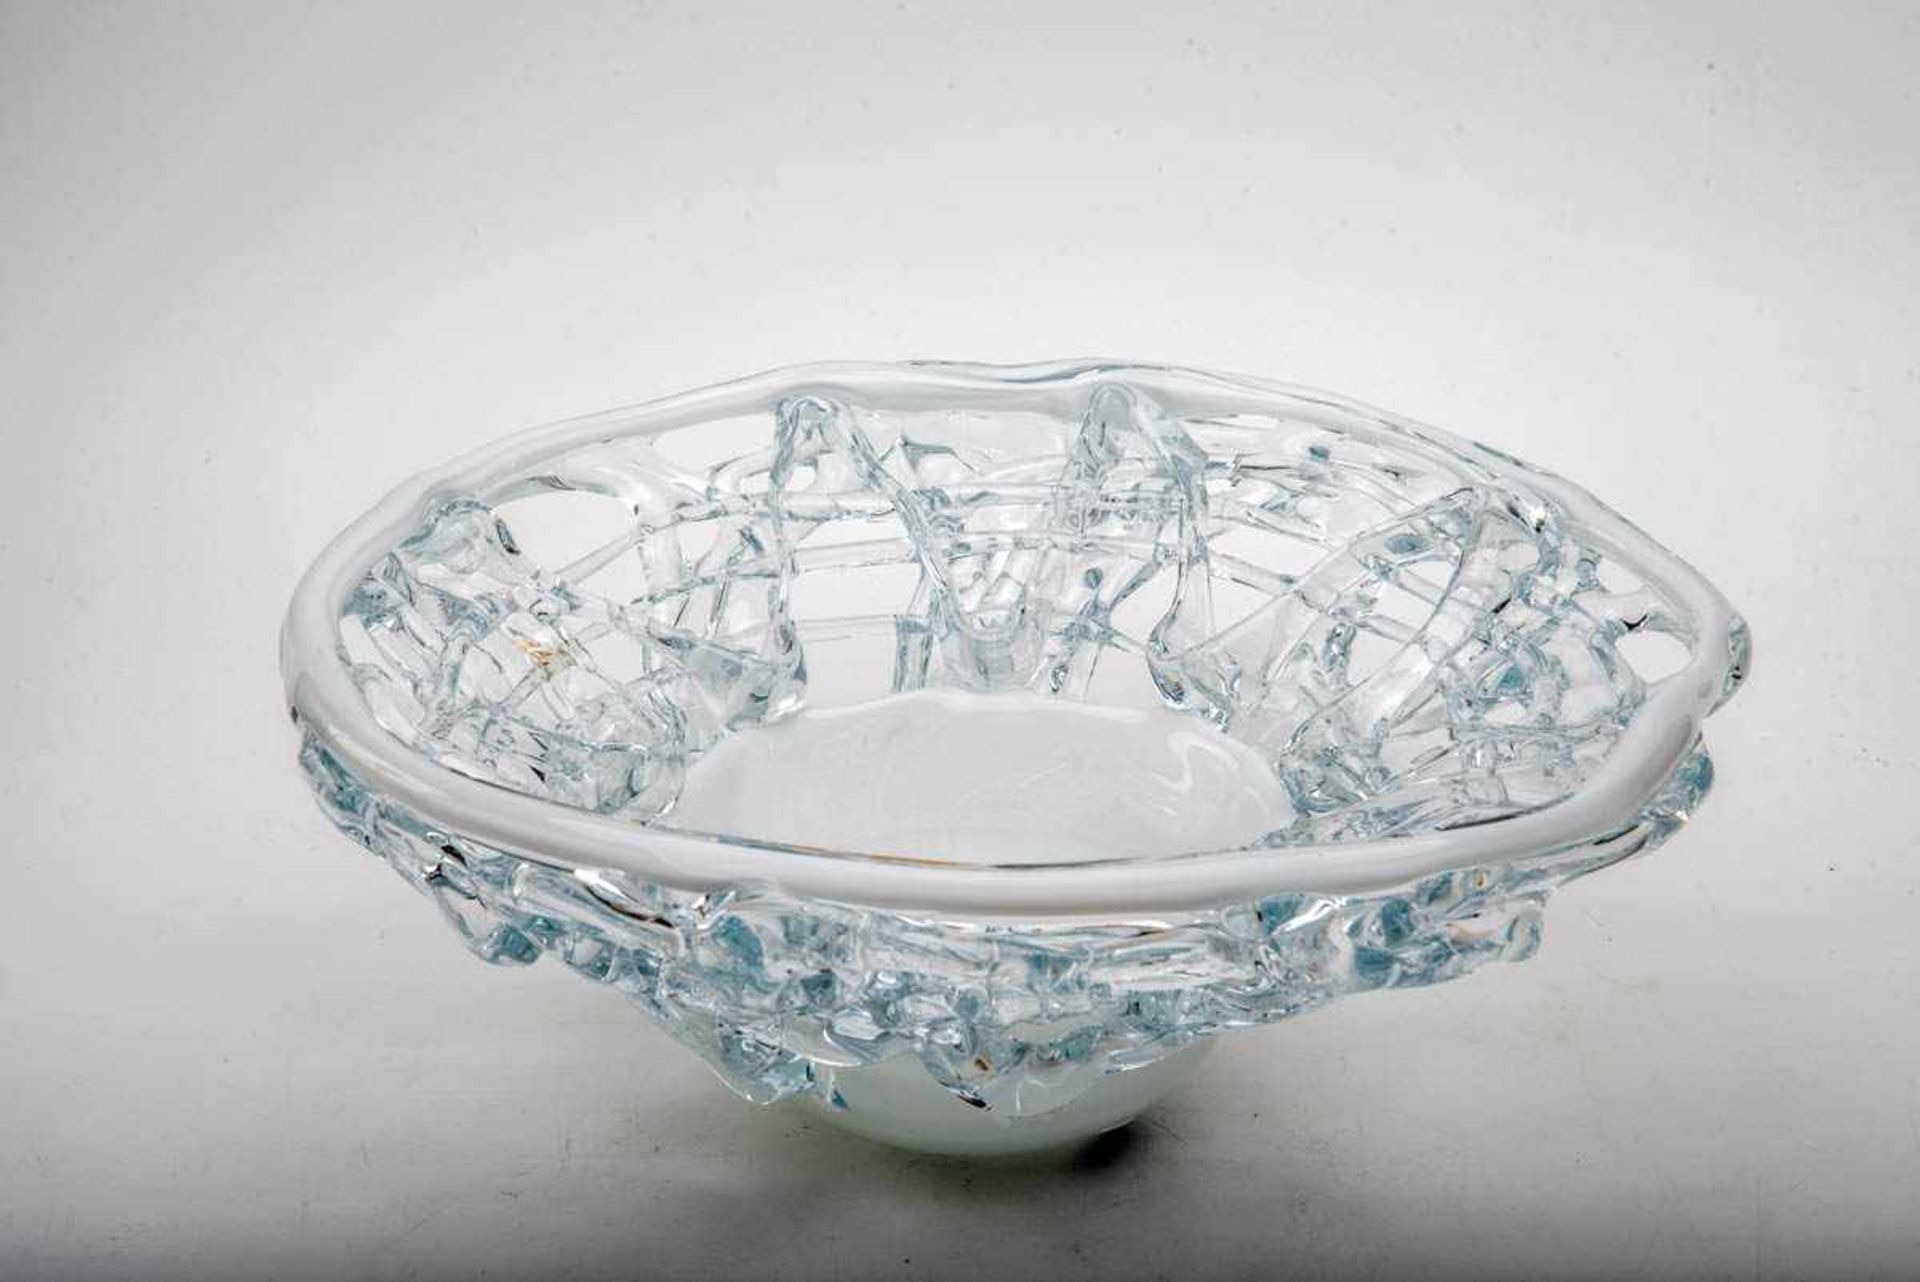 Designer-Glasschale, Murano Farbloses Glas, Schale und Rand weiß überfangen. D.: ca. 40 cm. - Bild 2 aus 3